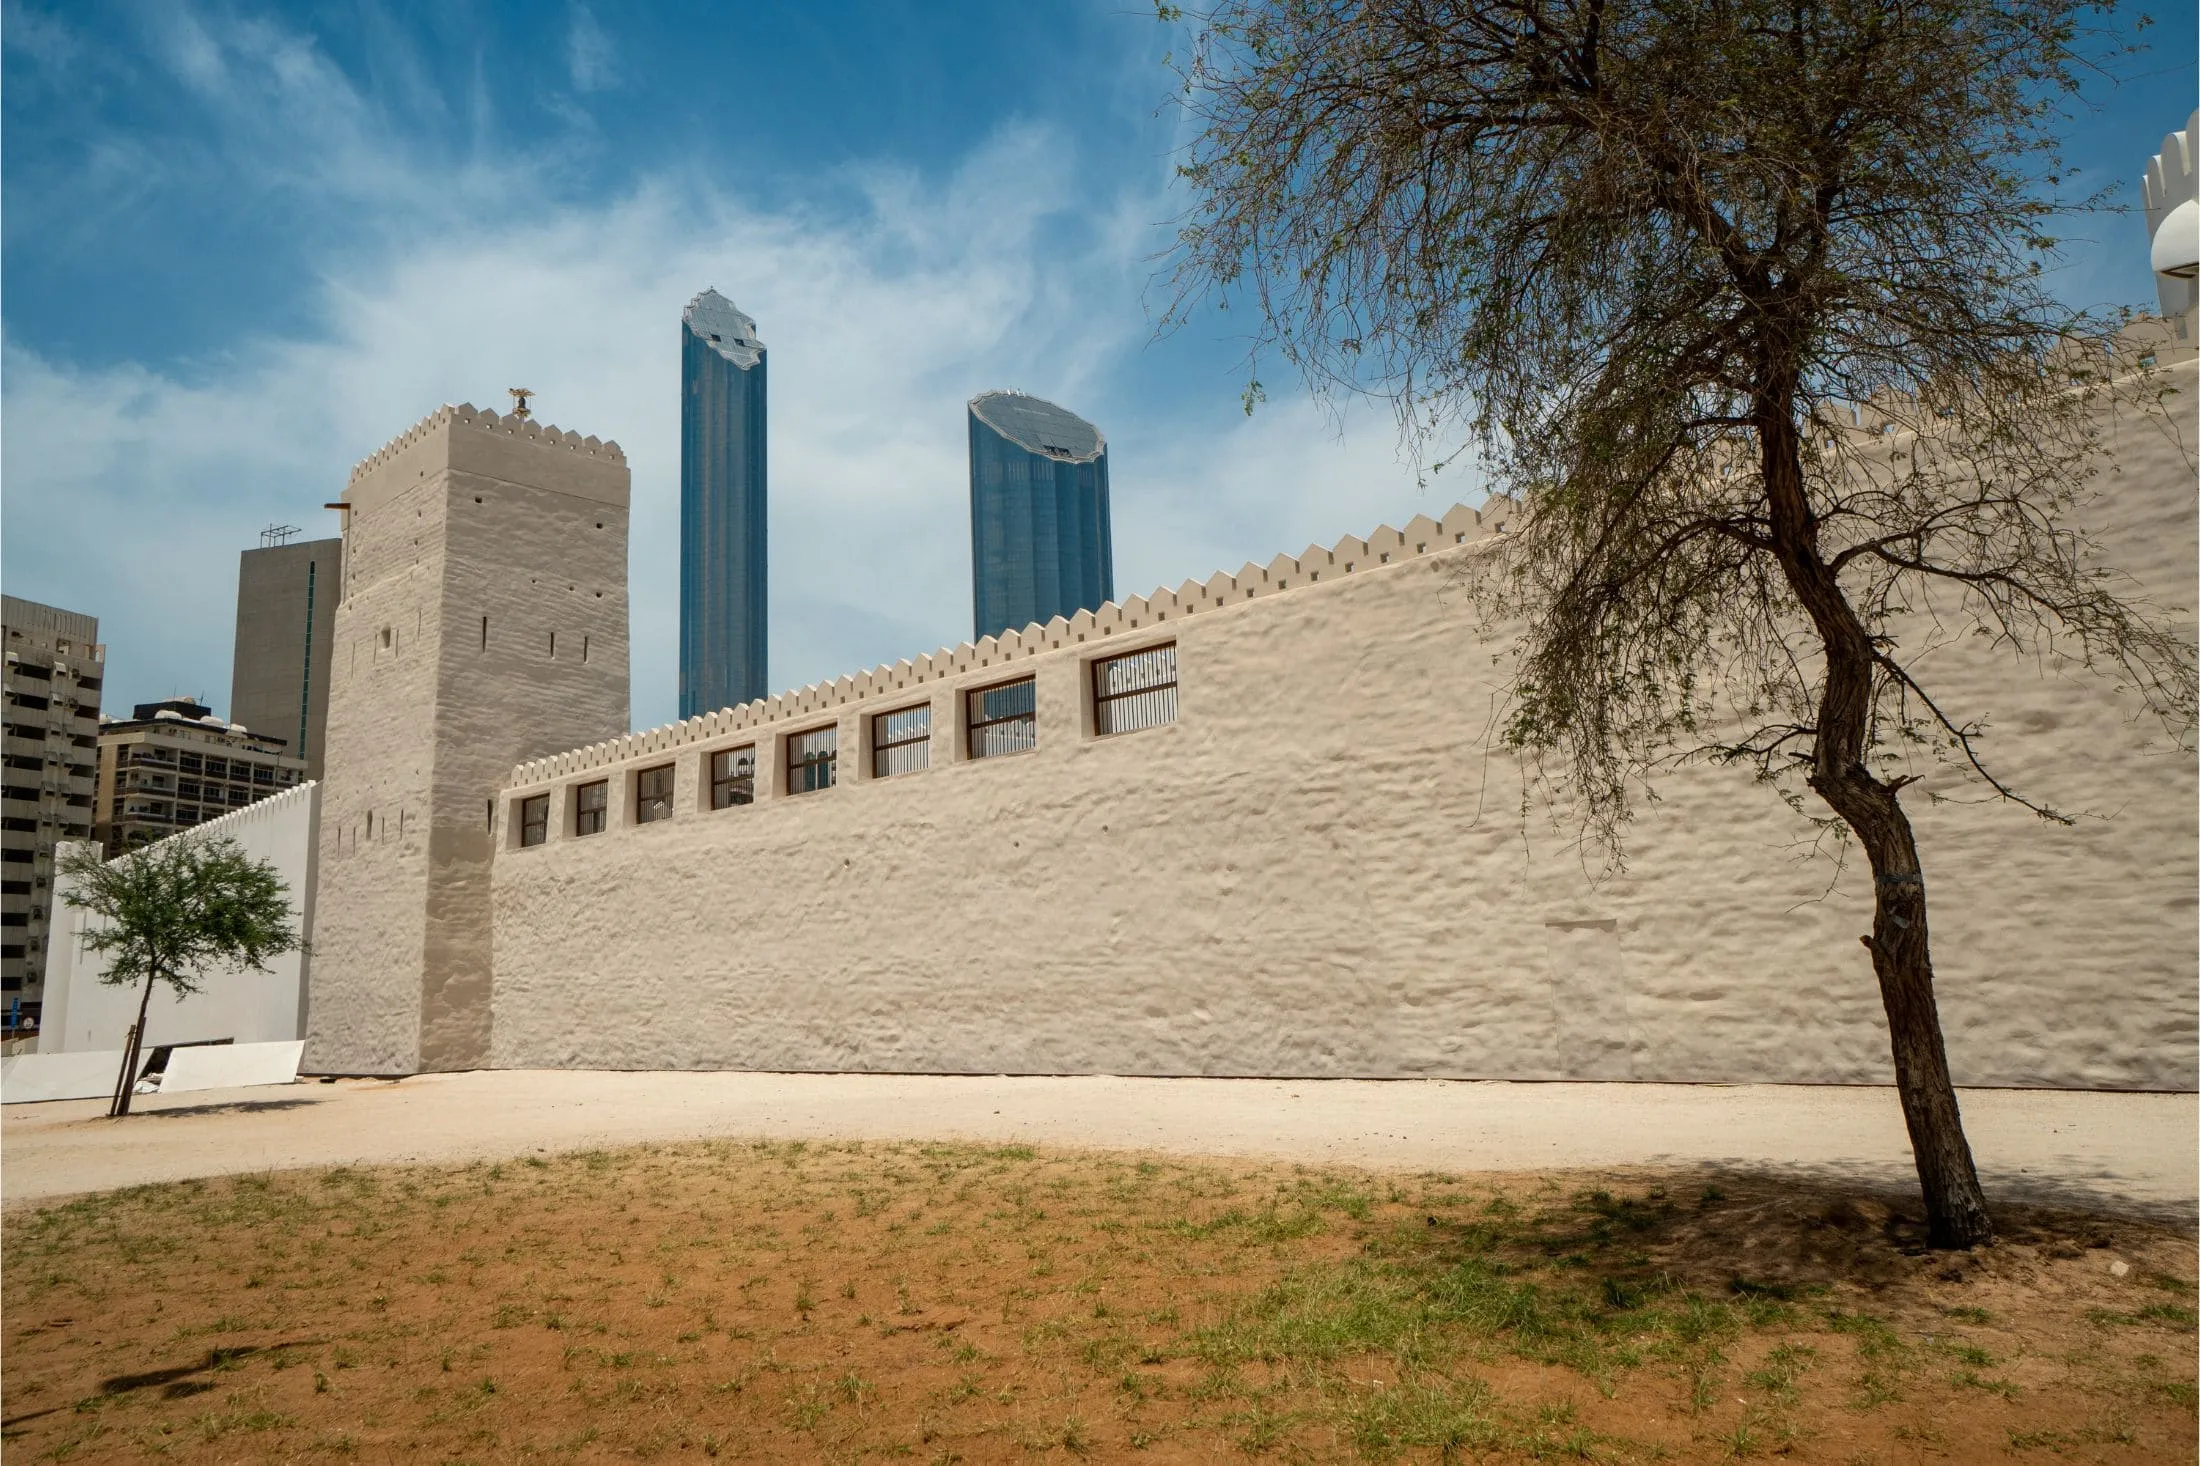 Oldest stone building in Abu Dhabi, Qasr Al Hosn